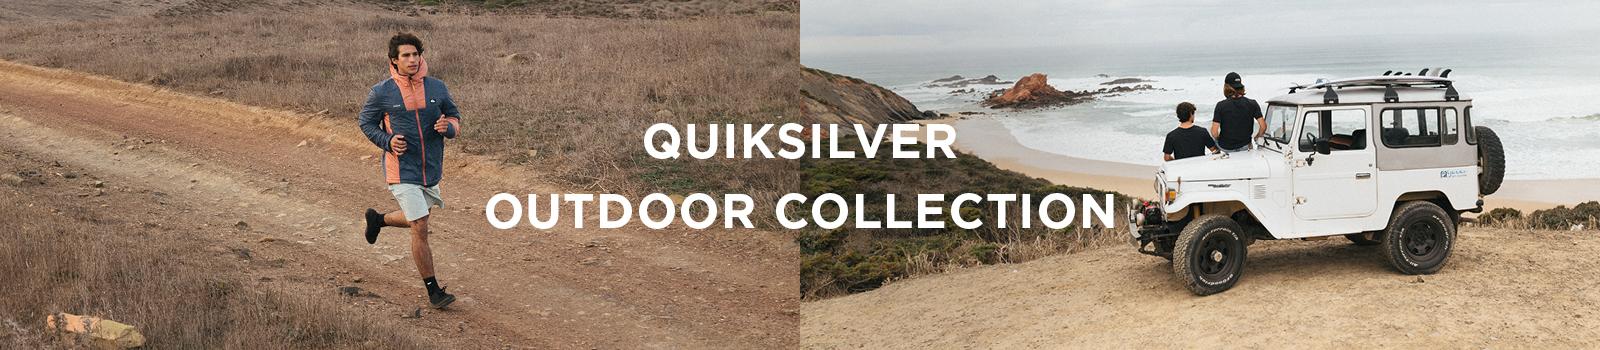 Quiksilver Outdoor